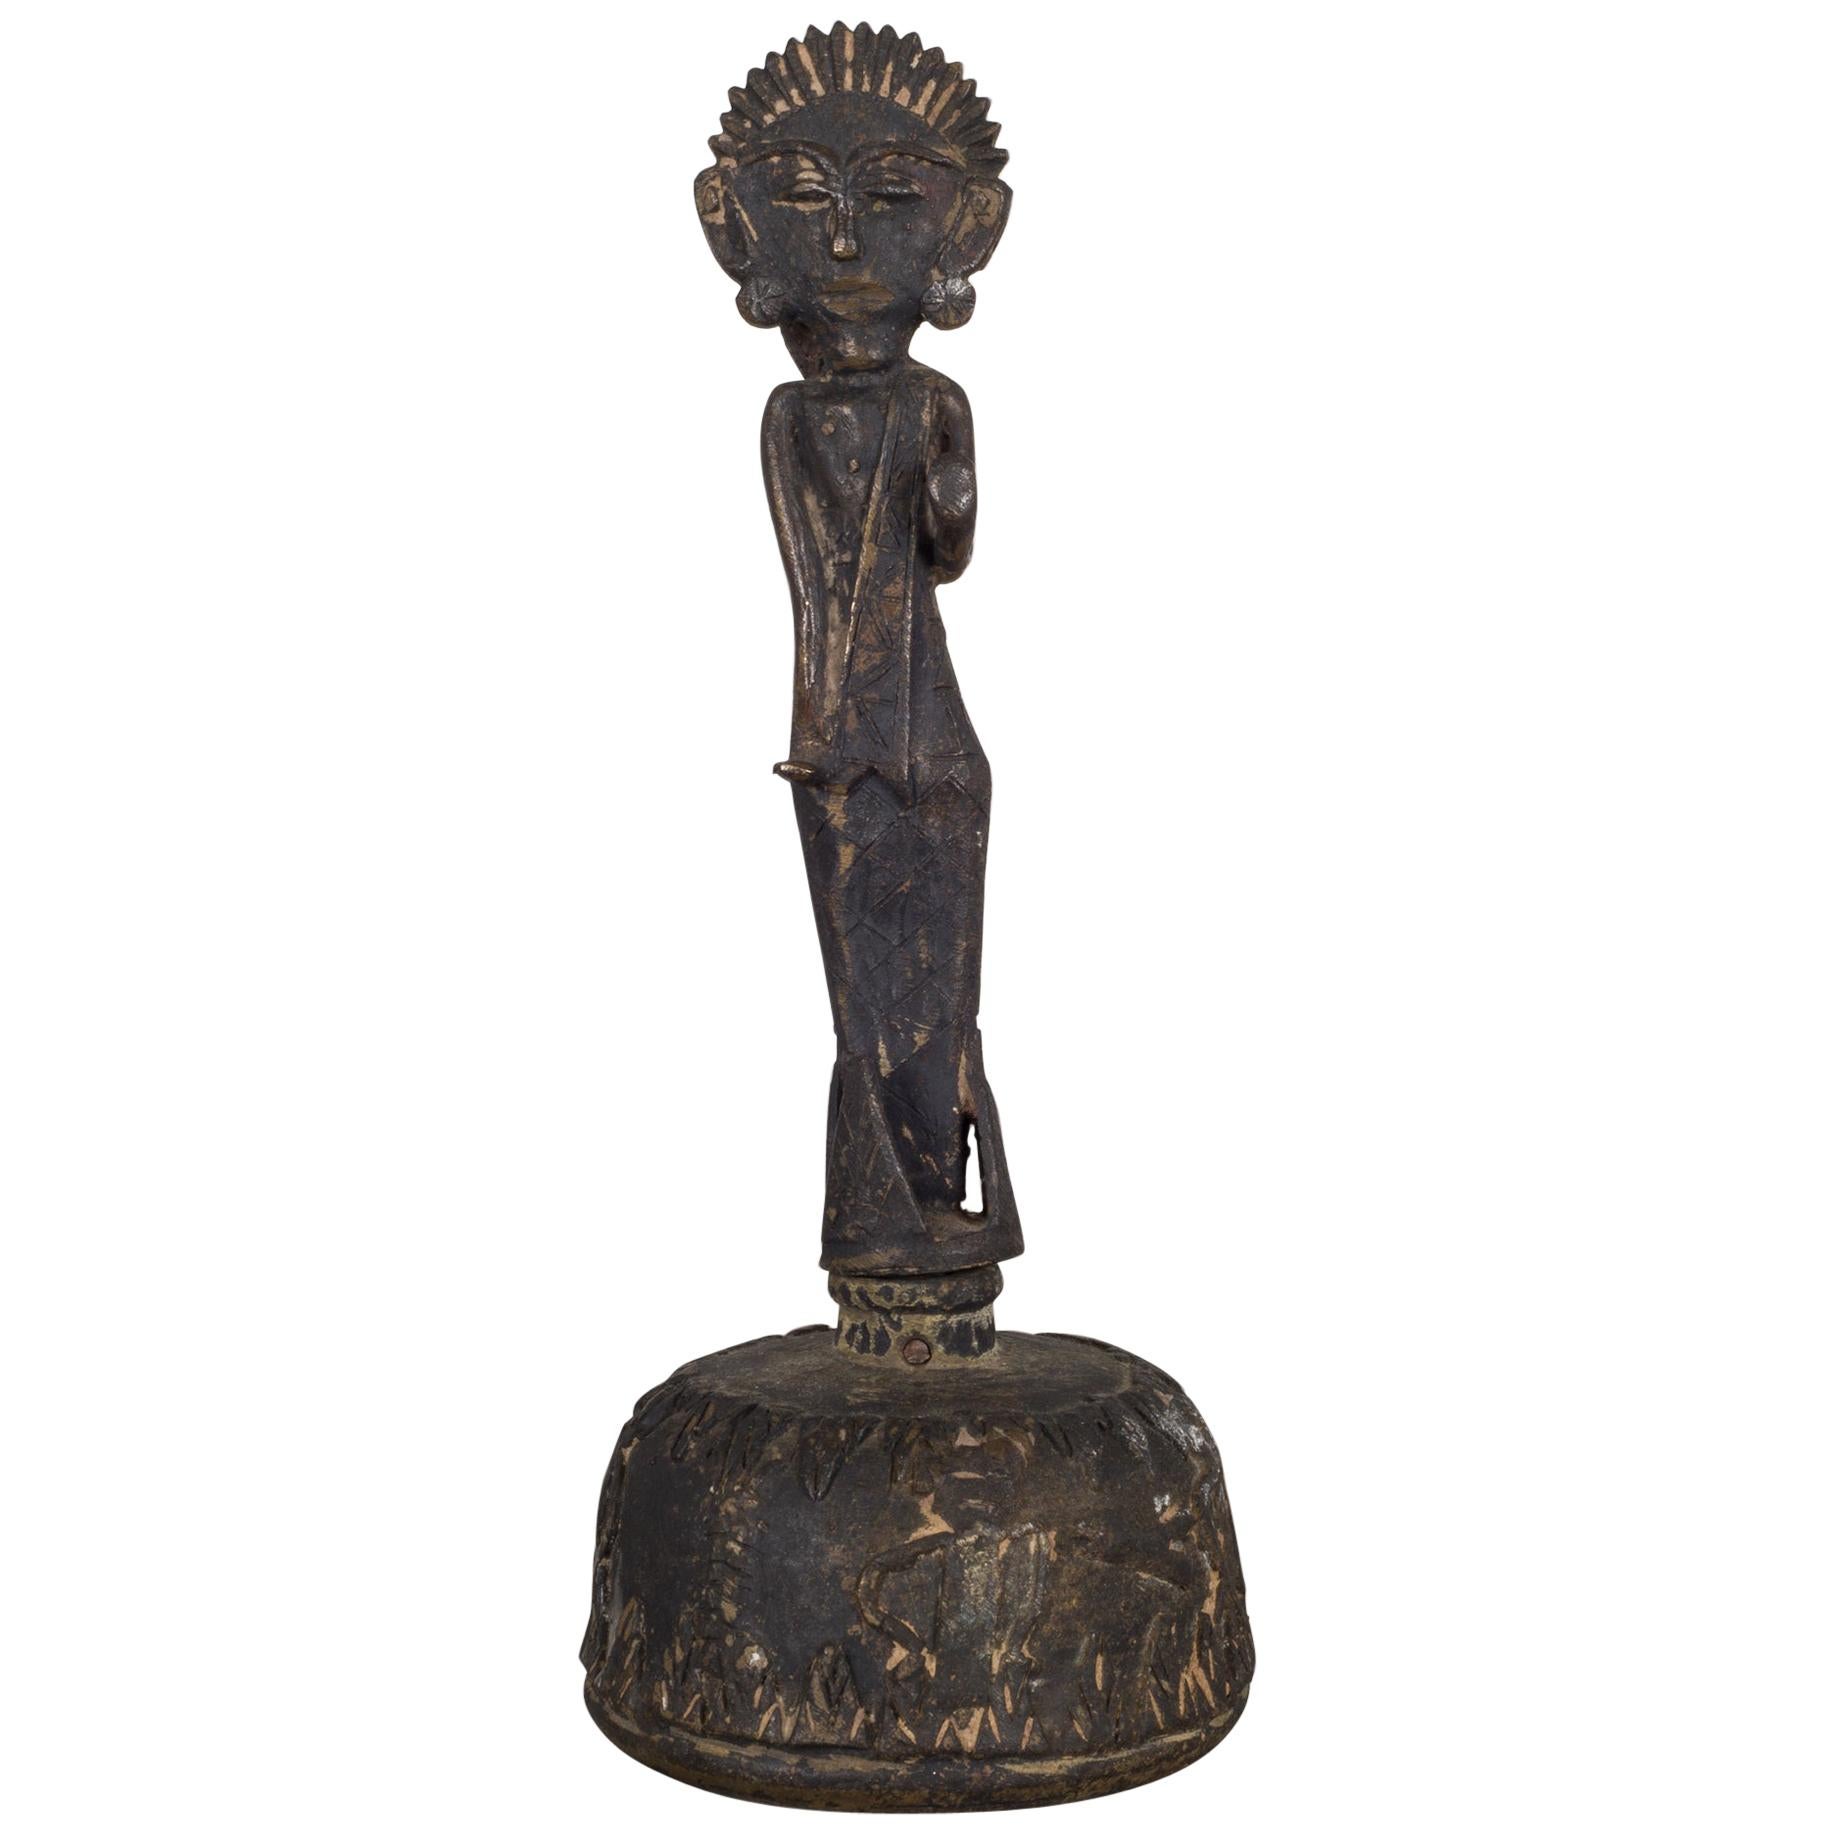 Antique Bronze Indian Buddha Hand Bell, circa 1800-1940